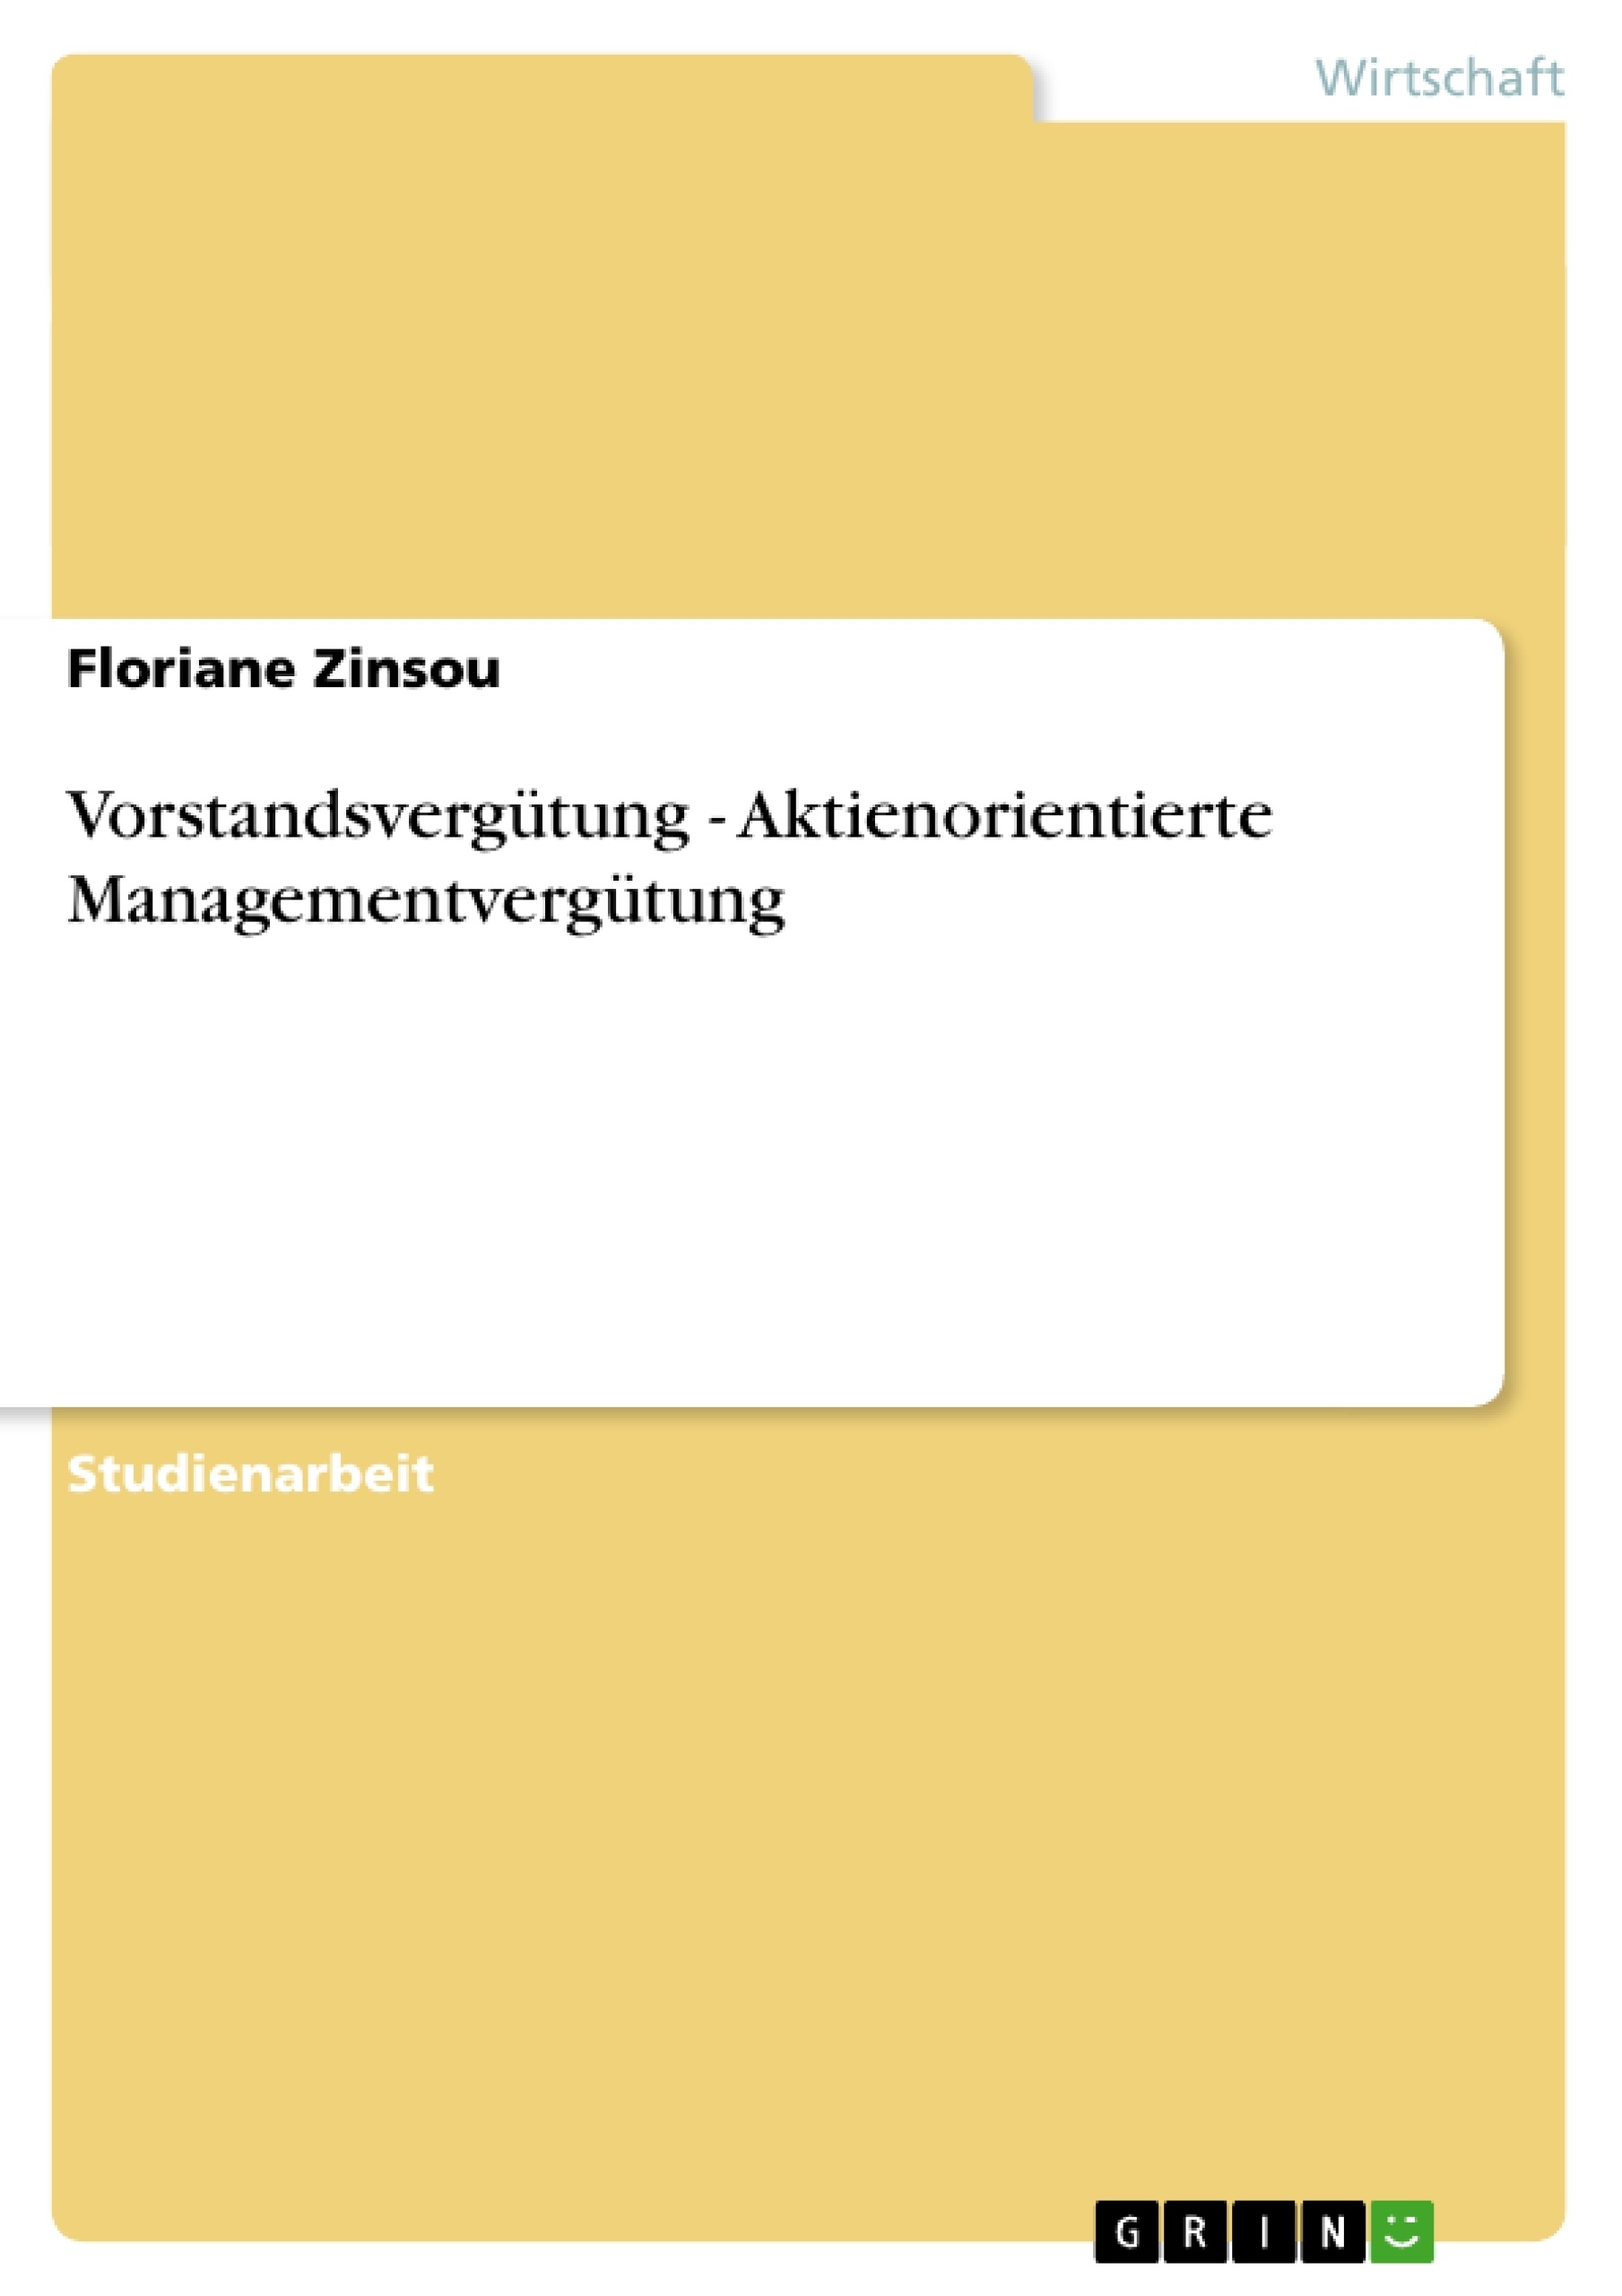 Title: Vorstandsvergütung - Aktienorientierte Managementvergütung